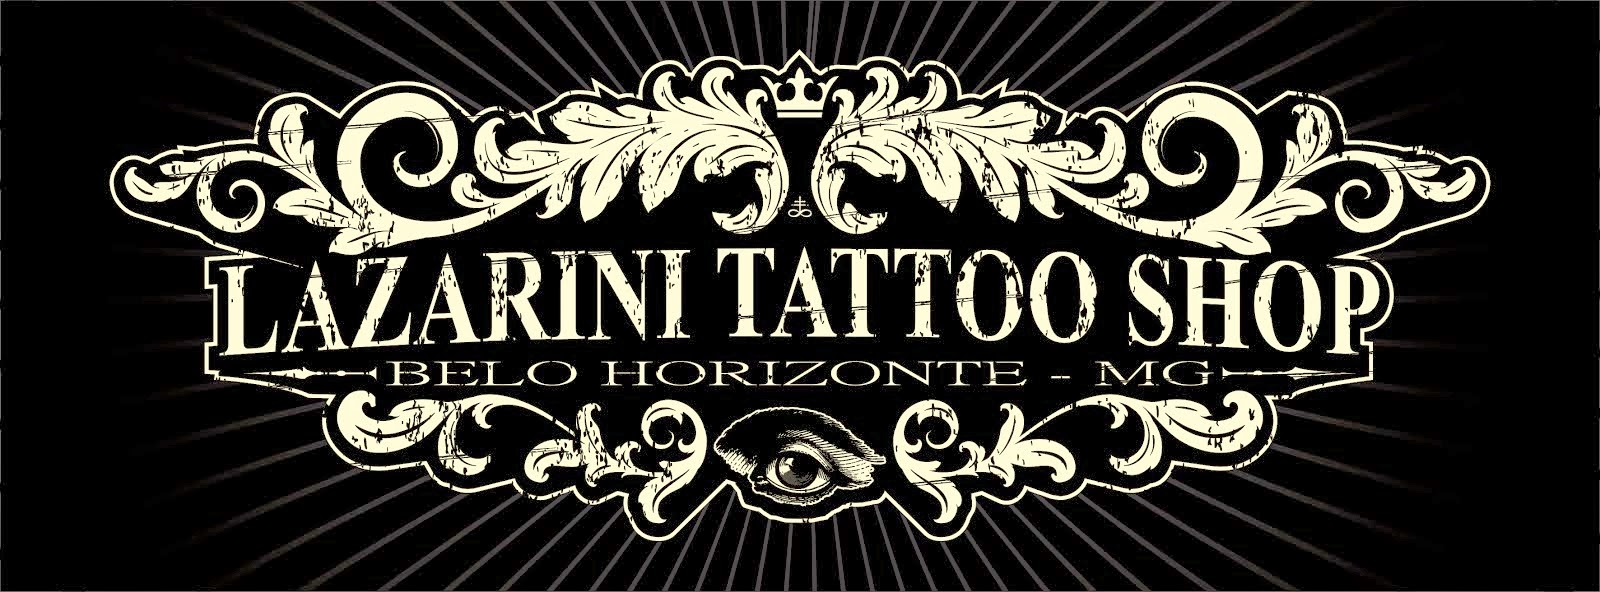 Lazarini Tattoo Shop 